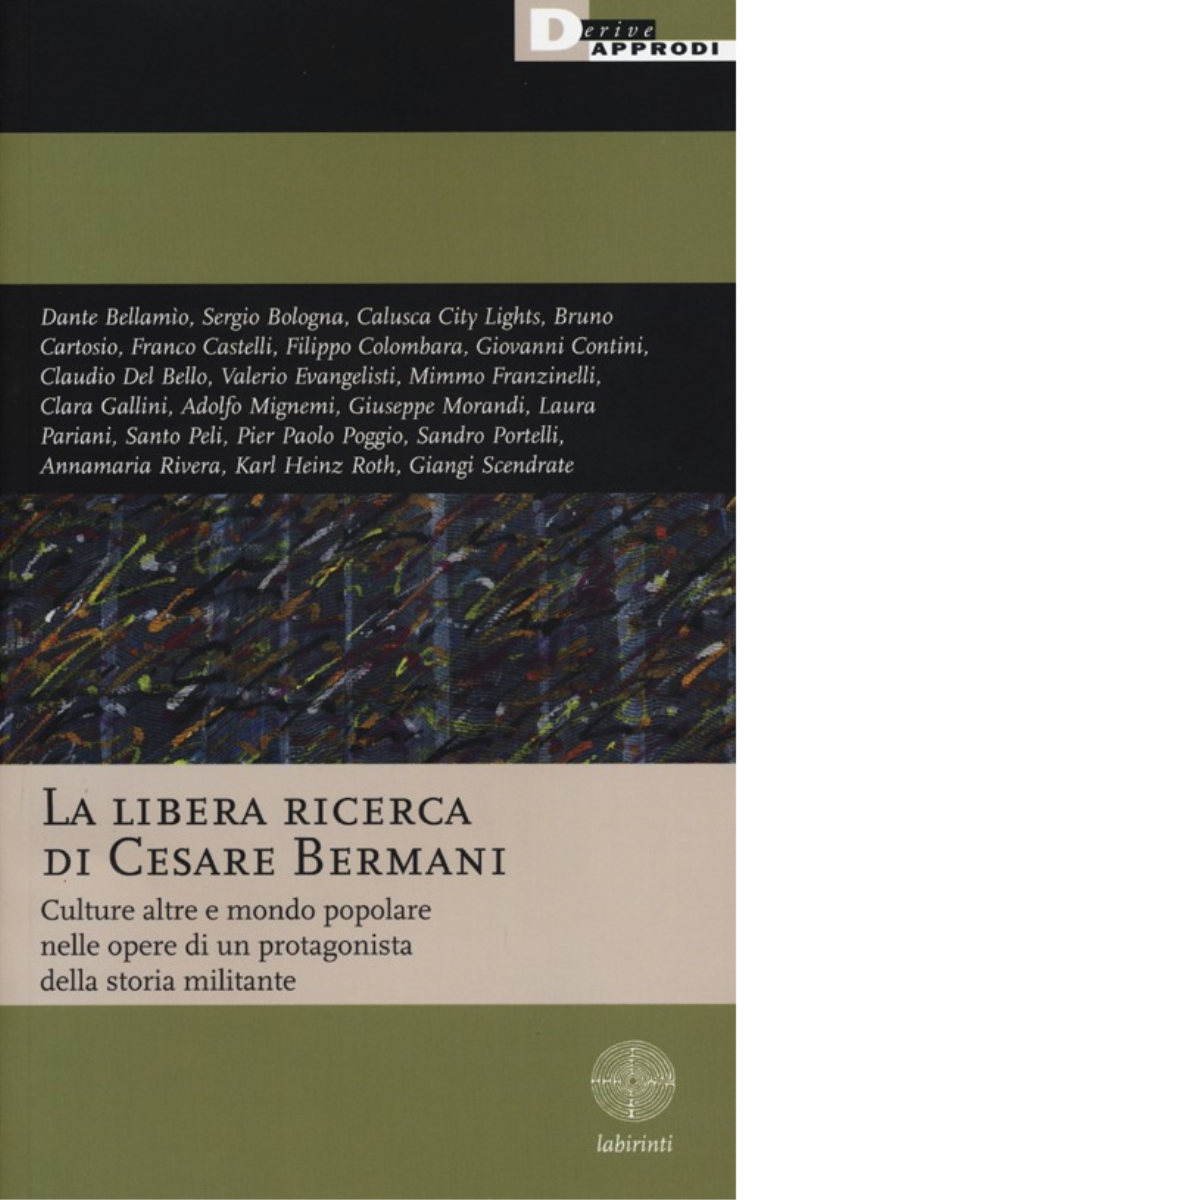 LA LIBERA RICERCA DI CESARE BERMANI. di AA.VV. - DeriveApprodi editore,2013